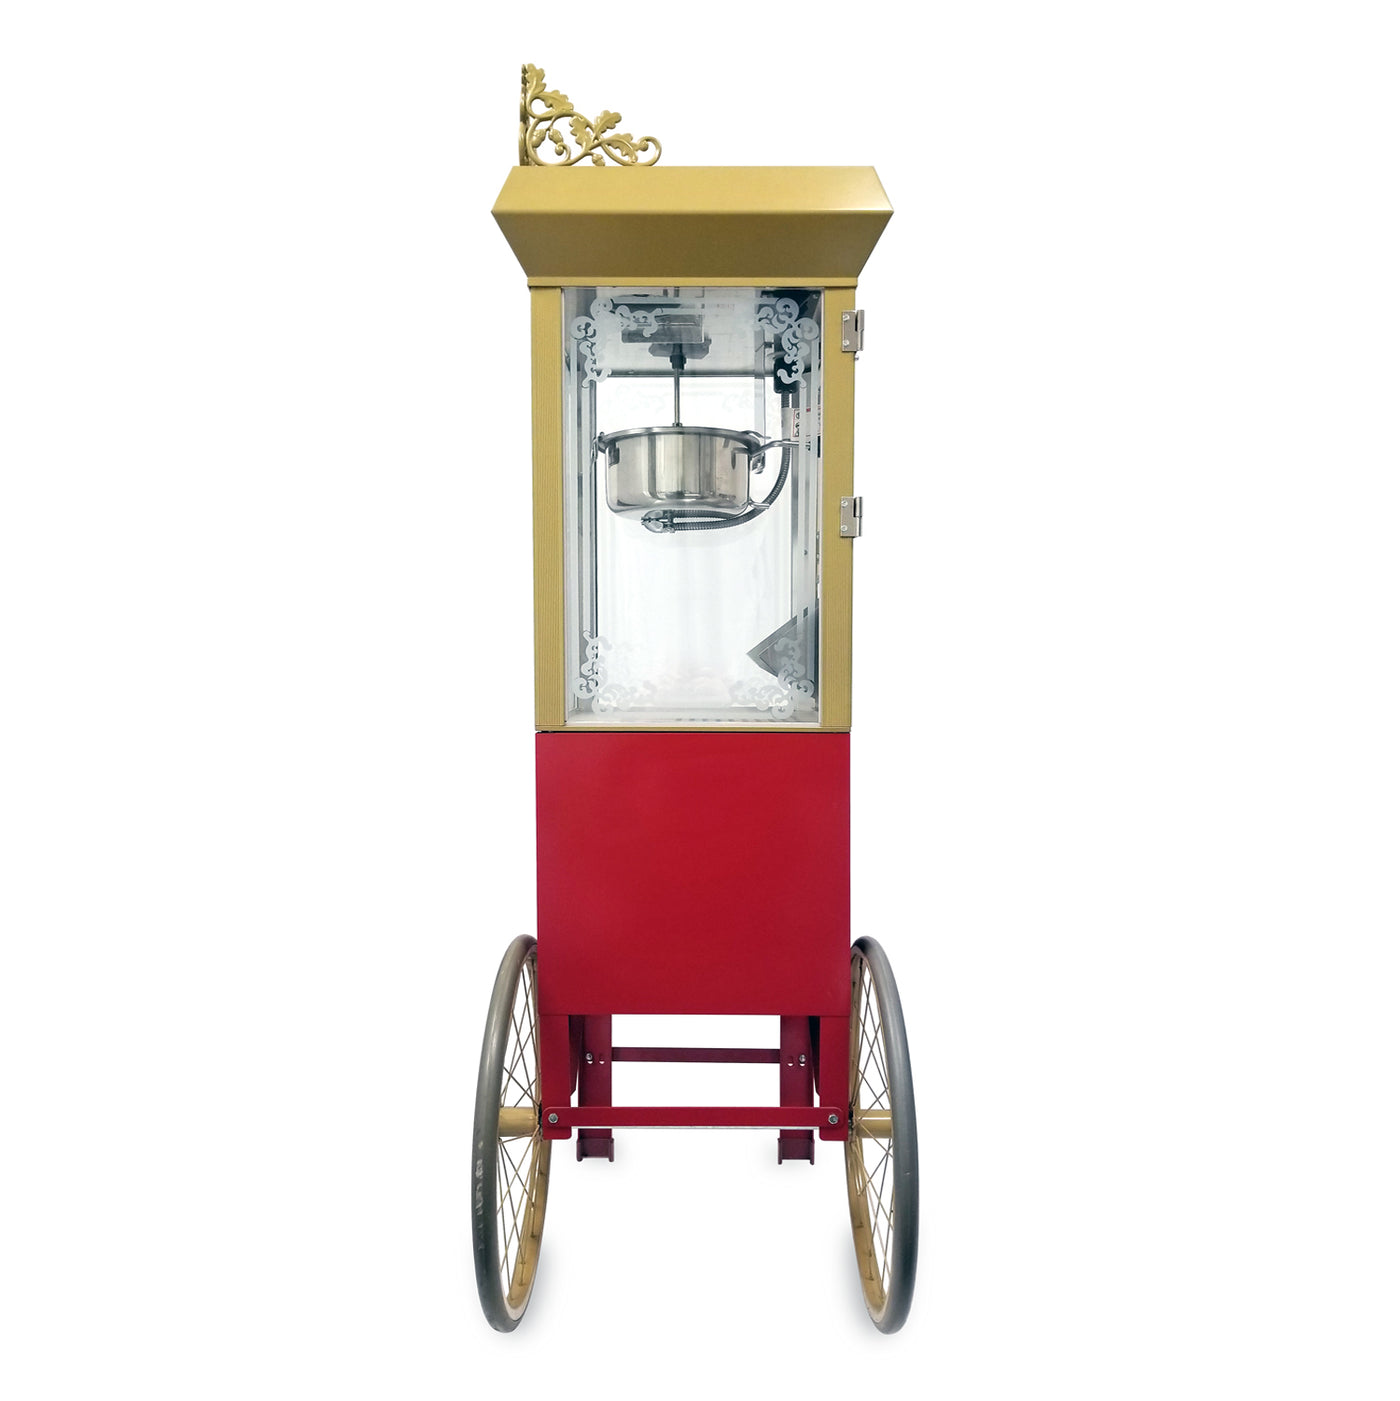 Gold Medal 2660SR Portable Popcorn Machine w/ 6 oz Kettle & Red Top, 120v